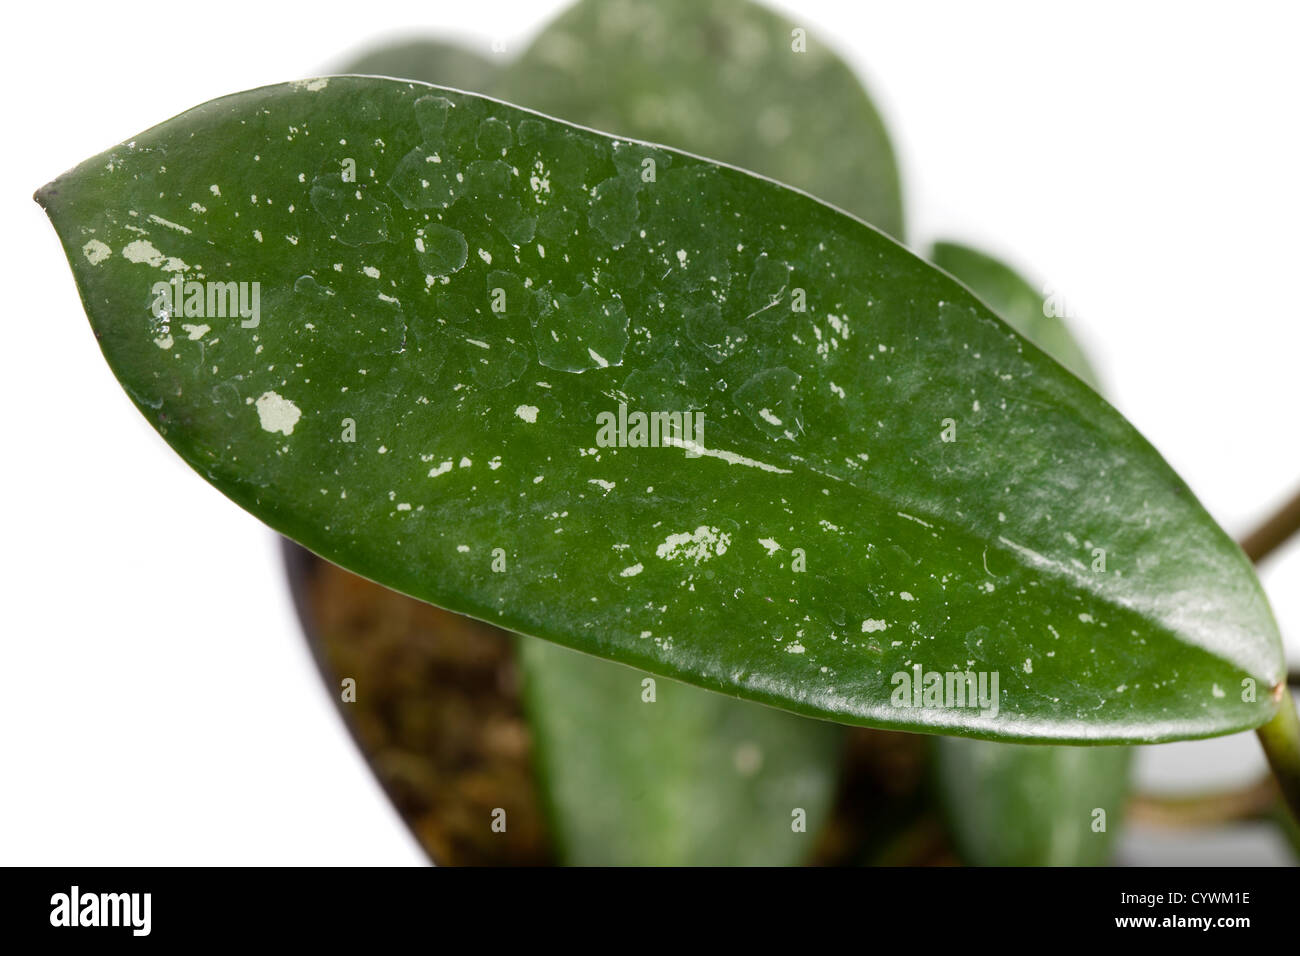 Wax plant, Porslinsblomma (Hoya crassipes) Stock Photo